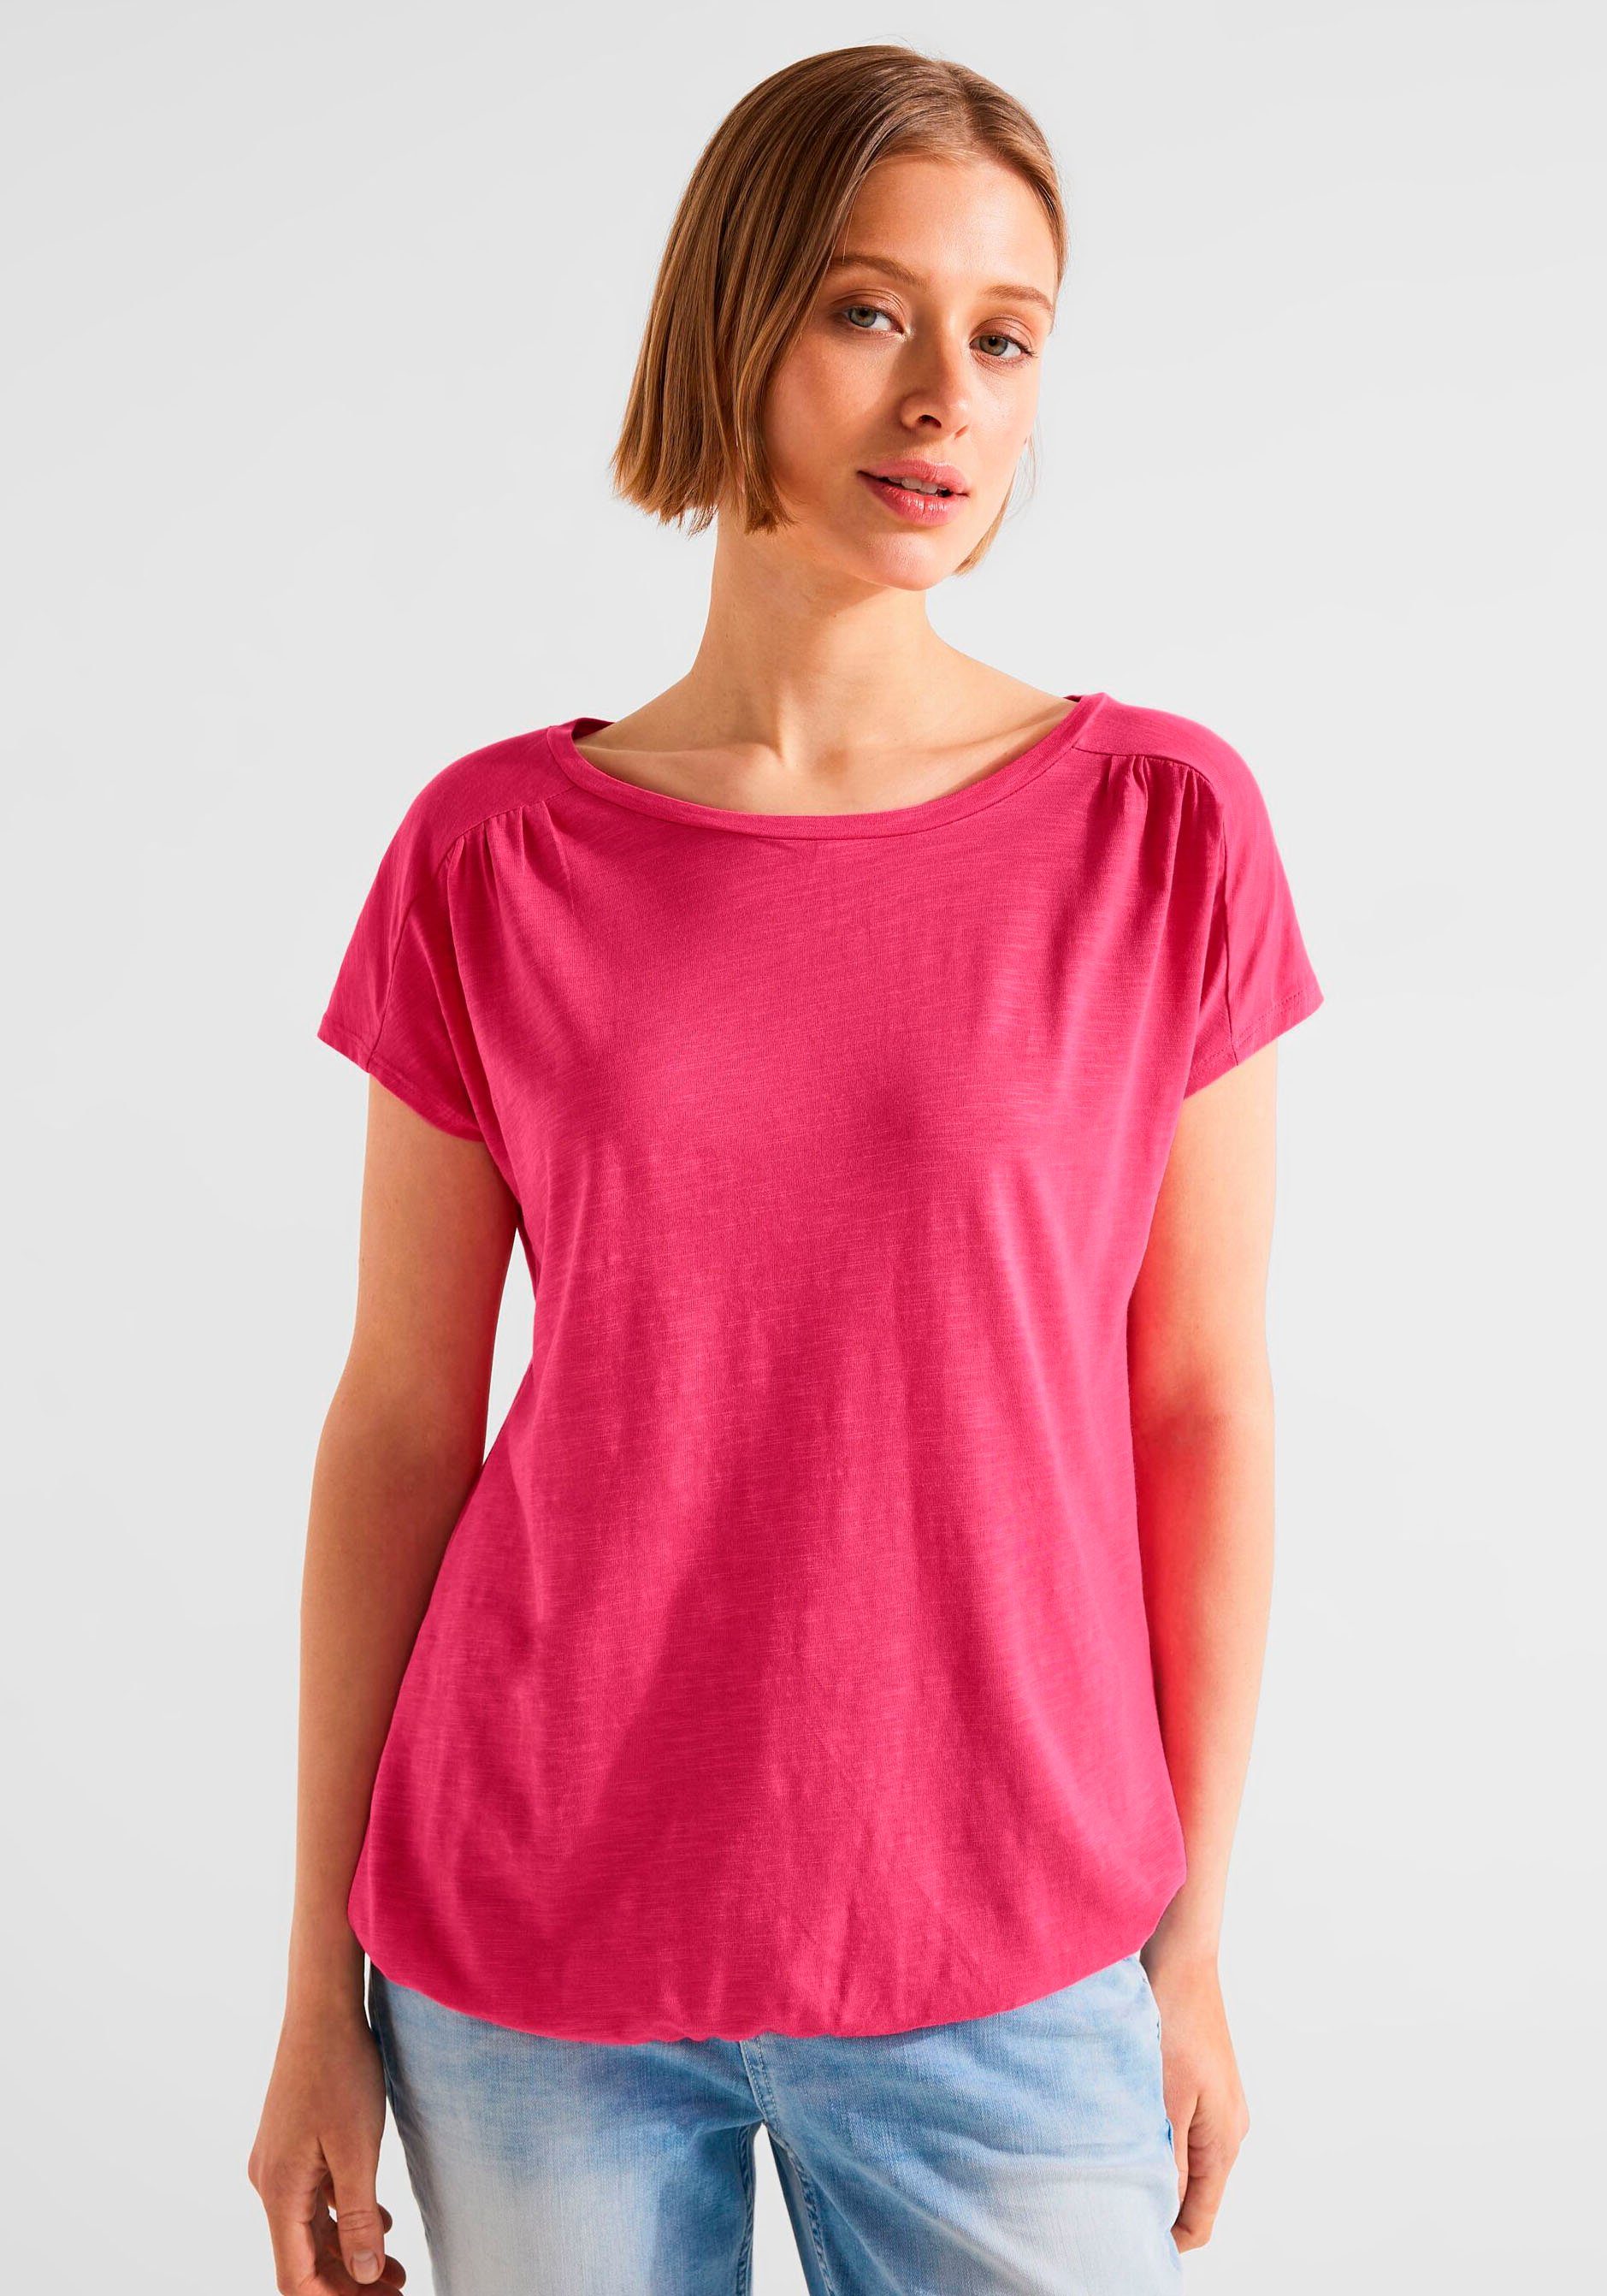 STREET ONE T-Shirt mit elastischem Saum für perfekten Sitz berry rose